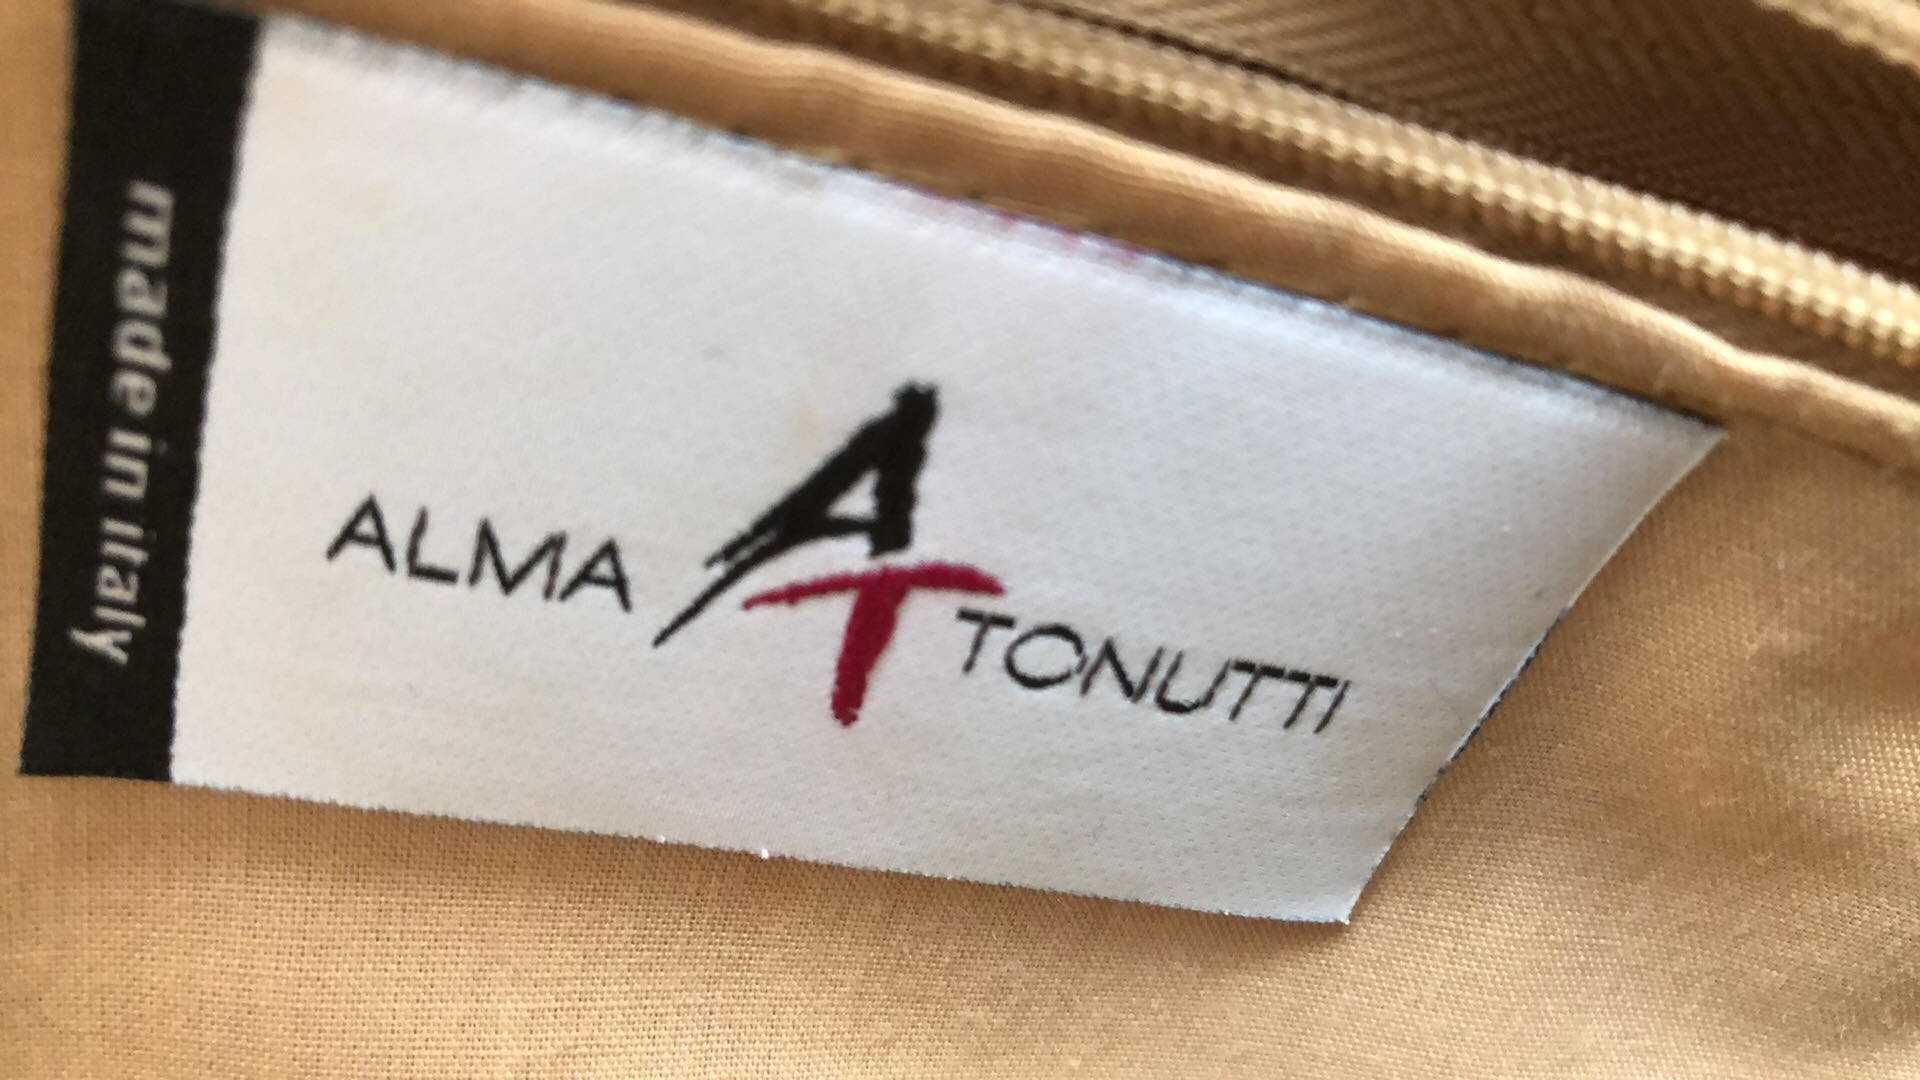 Carteira da marca italiana ALMA TONUTTI, nova sem etiqueta.